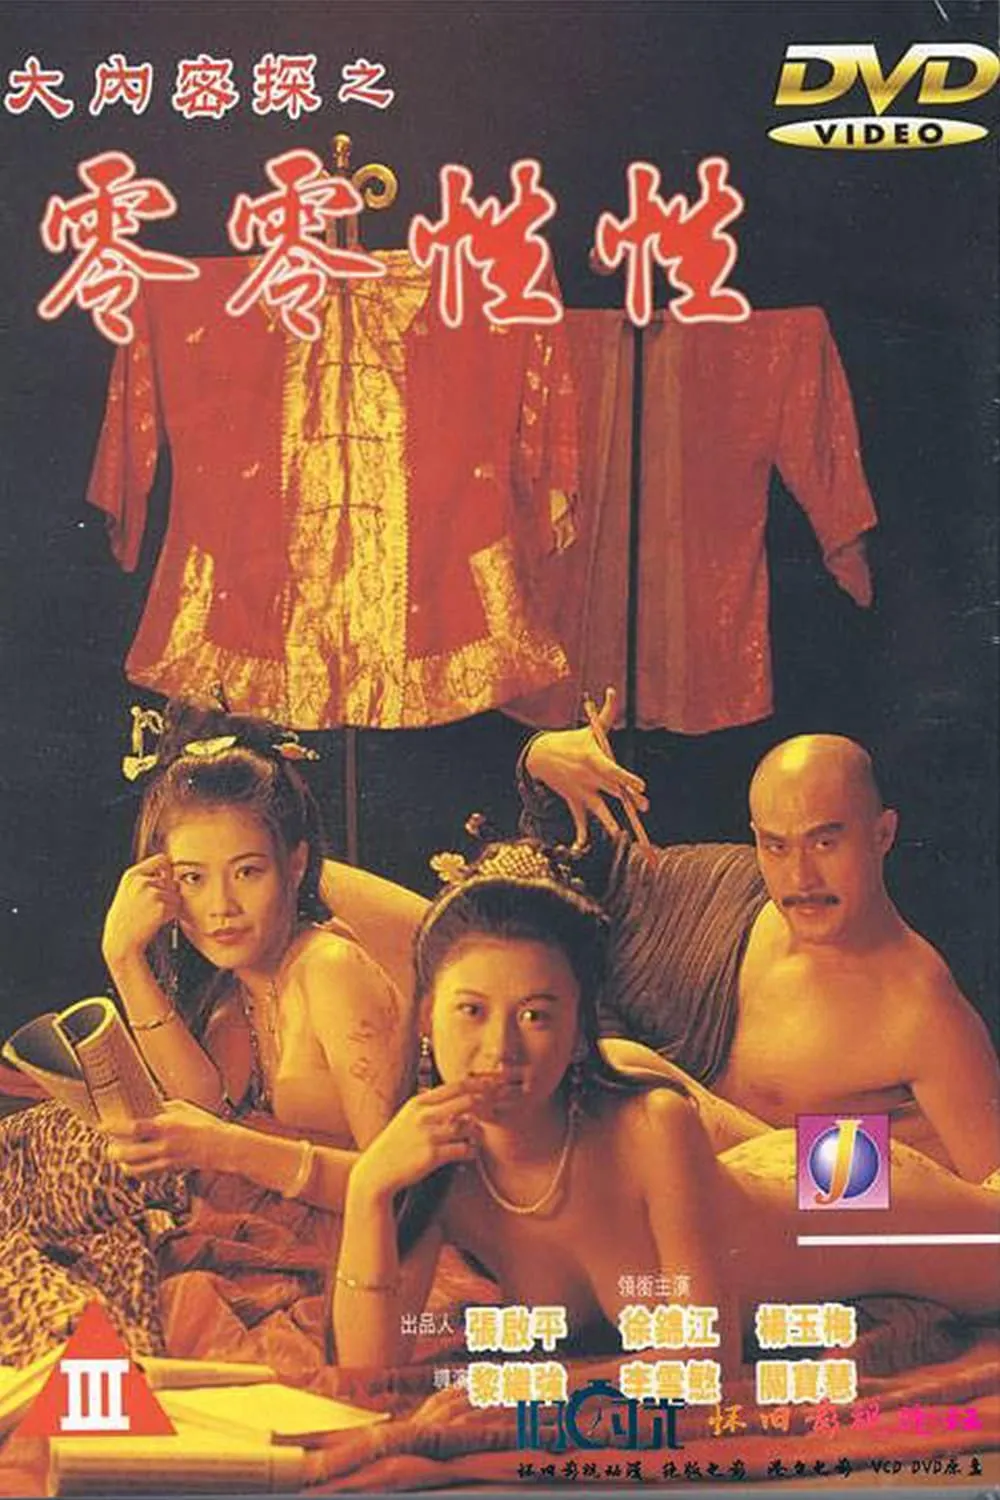 Phim Nhục Bồ Đoàn 3: Đại Nội Mật Thám Linh Linh Tình Dược - Yu Pui Tsuen III (1996)